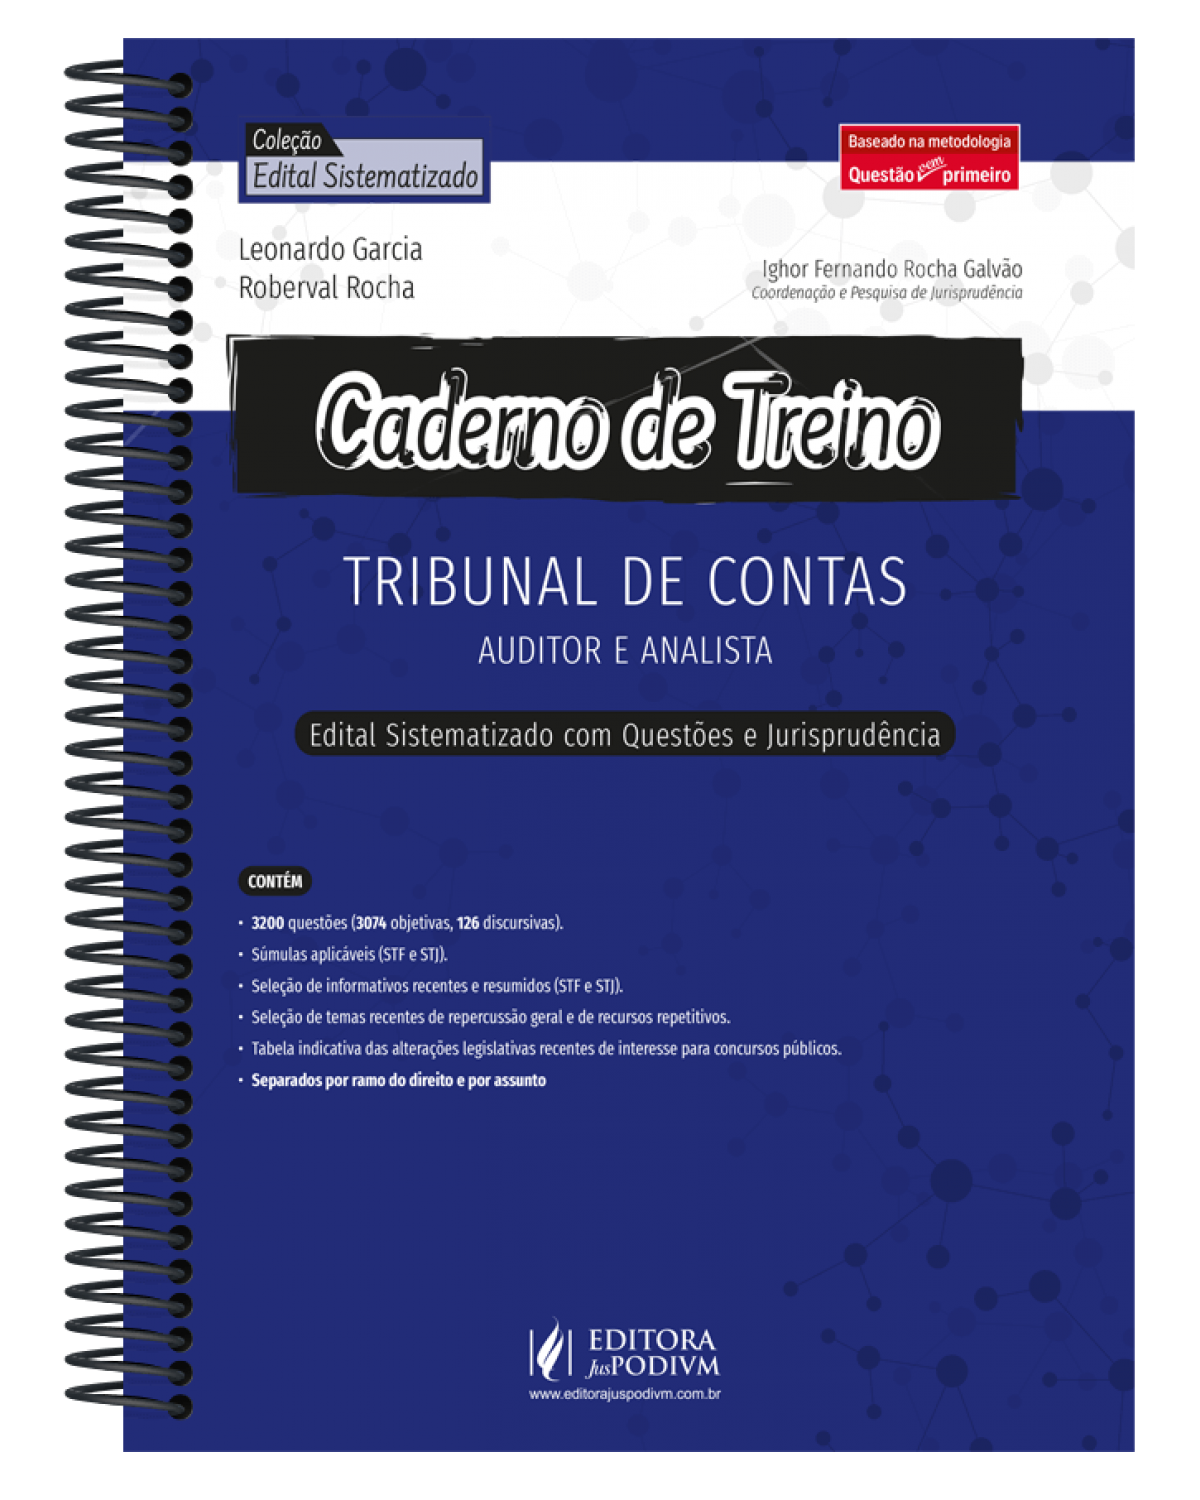 Caderno de treino - Tribunal de contas - Auditor e analista - Edital sistematizado com questões e jurisprudência - 1ª Edição | 2022